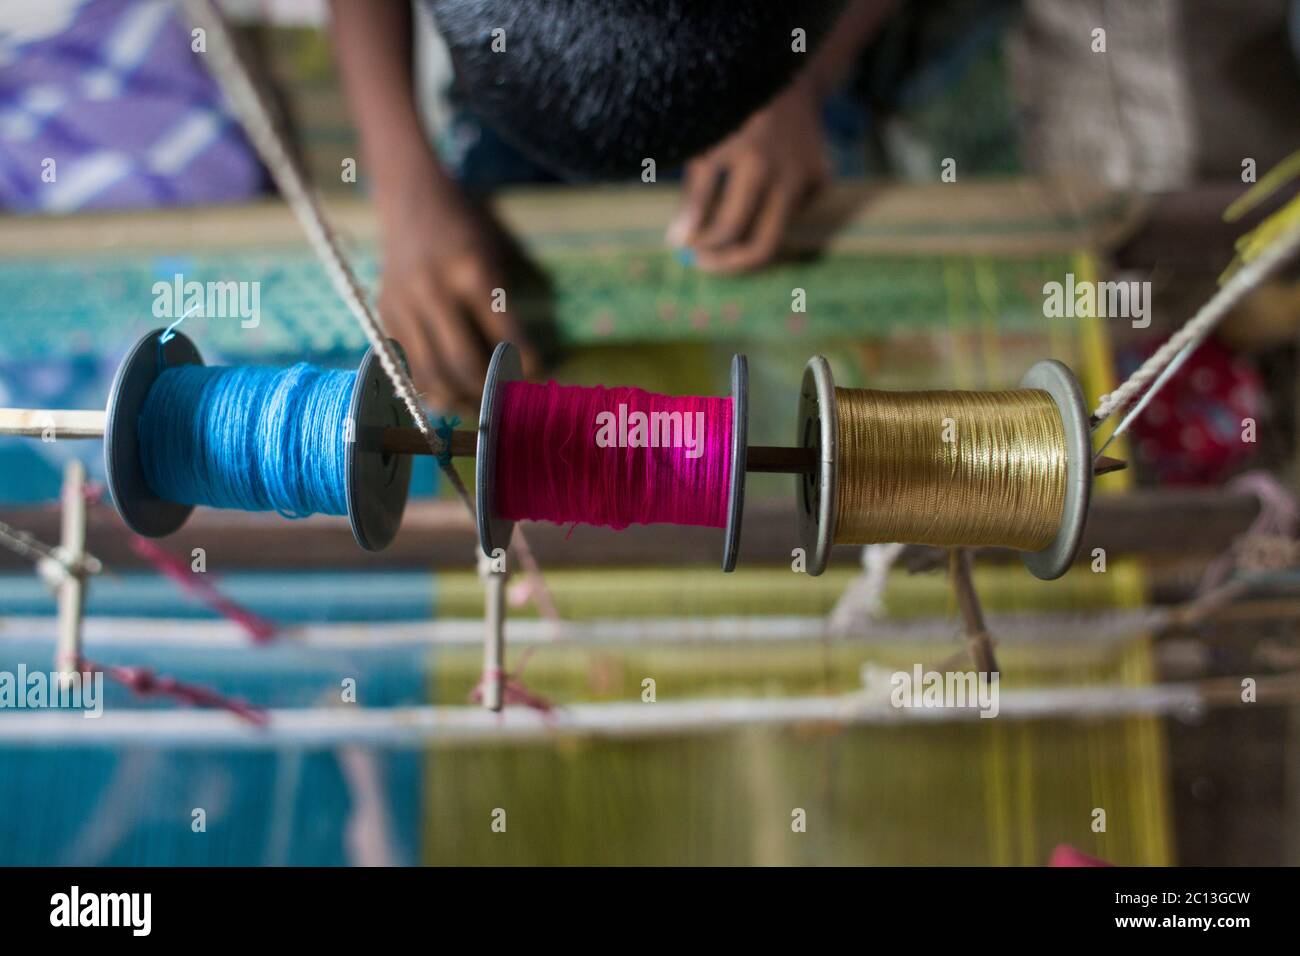 DHAKA, BANGLADESH 07 luglio : UN tessitore del Bangladesh progetta un Jamdani Sari (abbigliamento femminile) nel villaggio di Rupganj Thana, nella periferia di Dhaka, il 7° J. Foto Stock